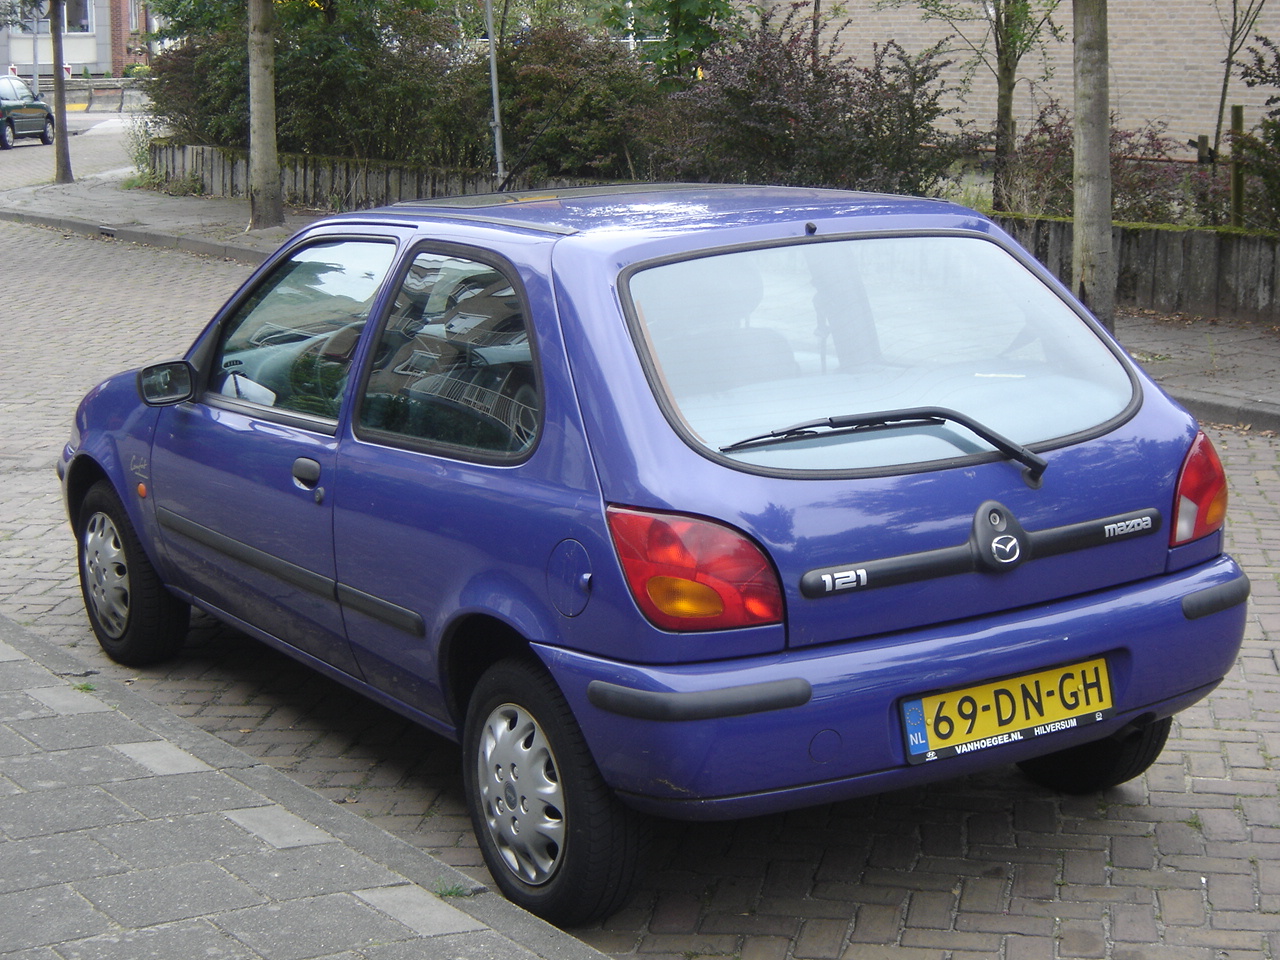 Hilversum: 1999 Mazda 121 | Flickr - Photo Sharing!